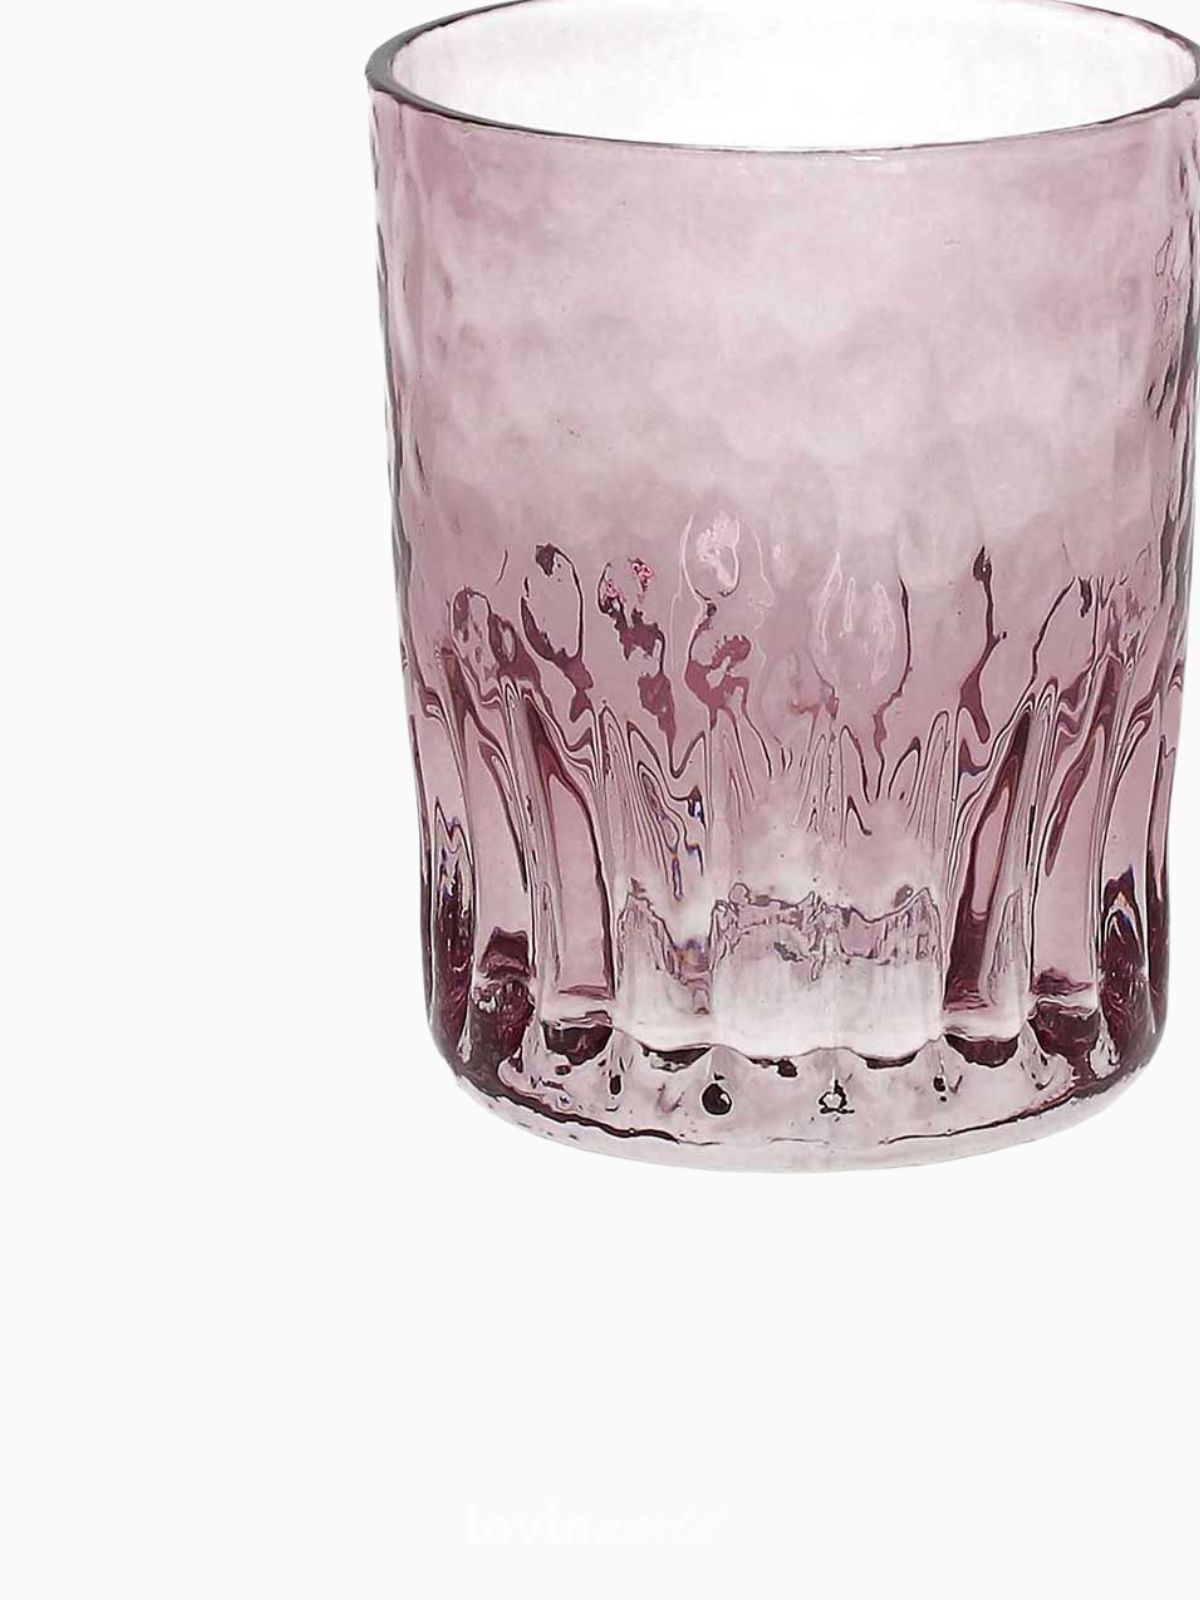 Confezione da 6 bicchieri da acqua in cristallo rosa